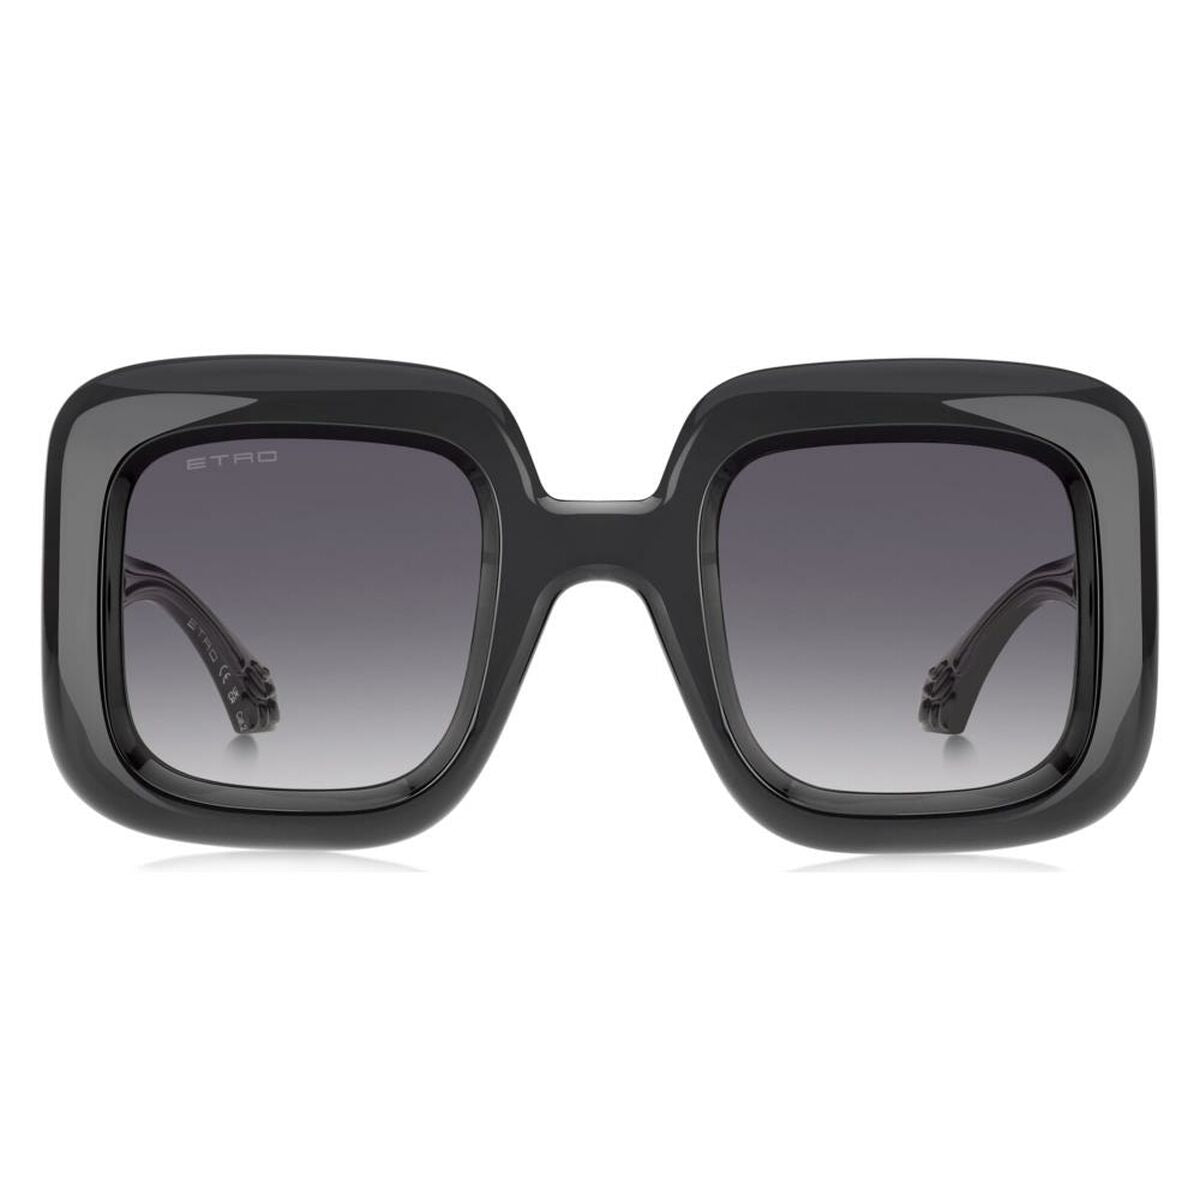 Kaufe Damensonnenbrille Etro ETRO 0015_S bei AWK Flagship um € 252.00